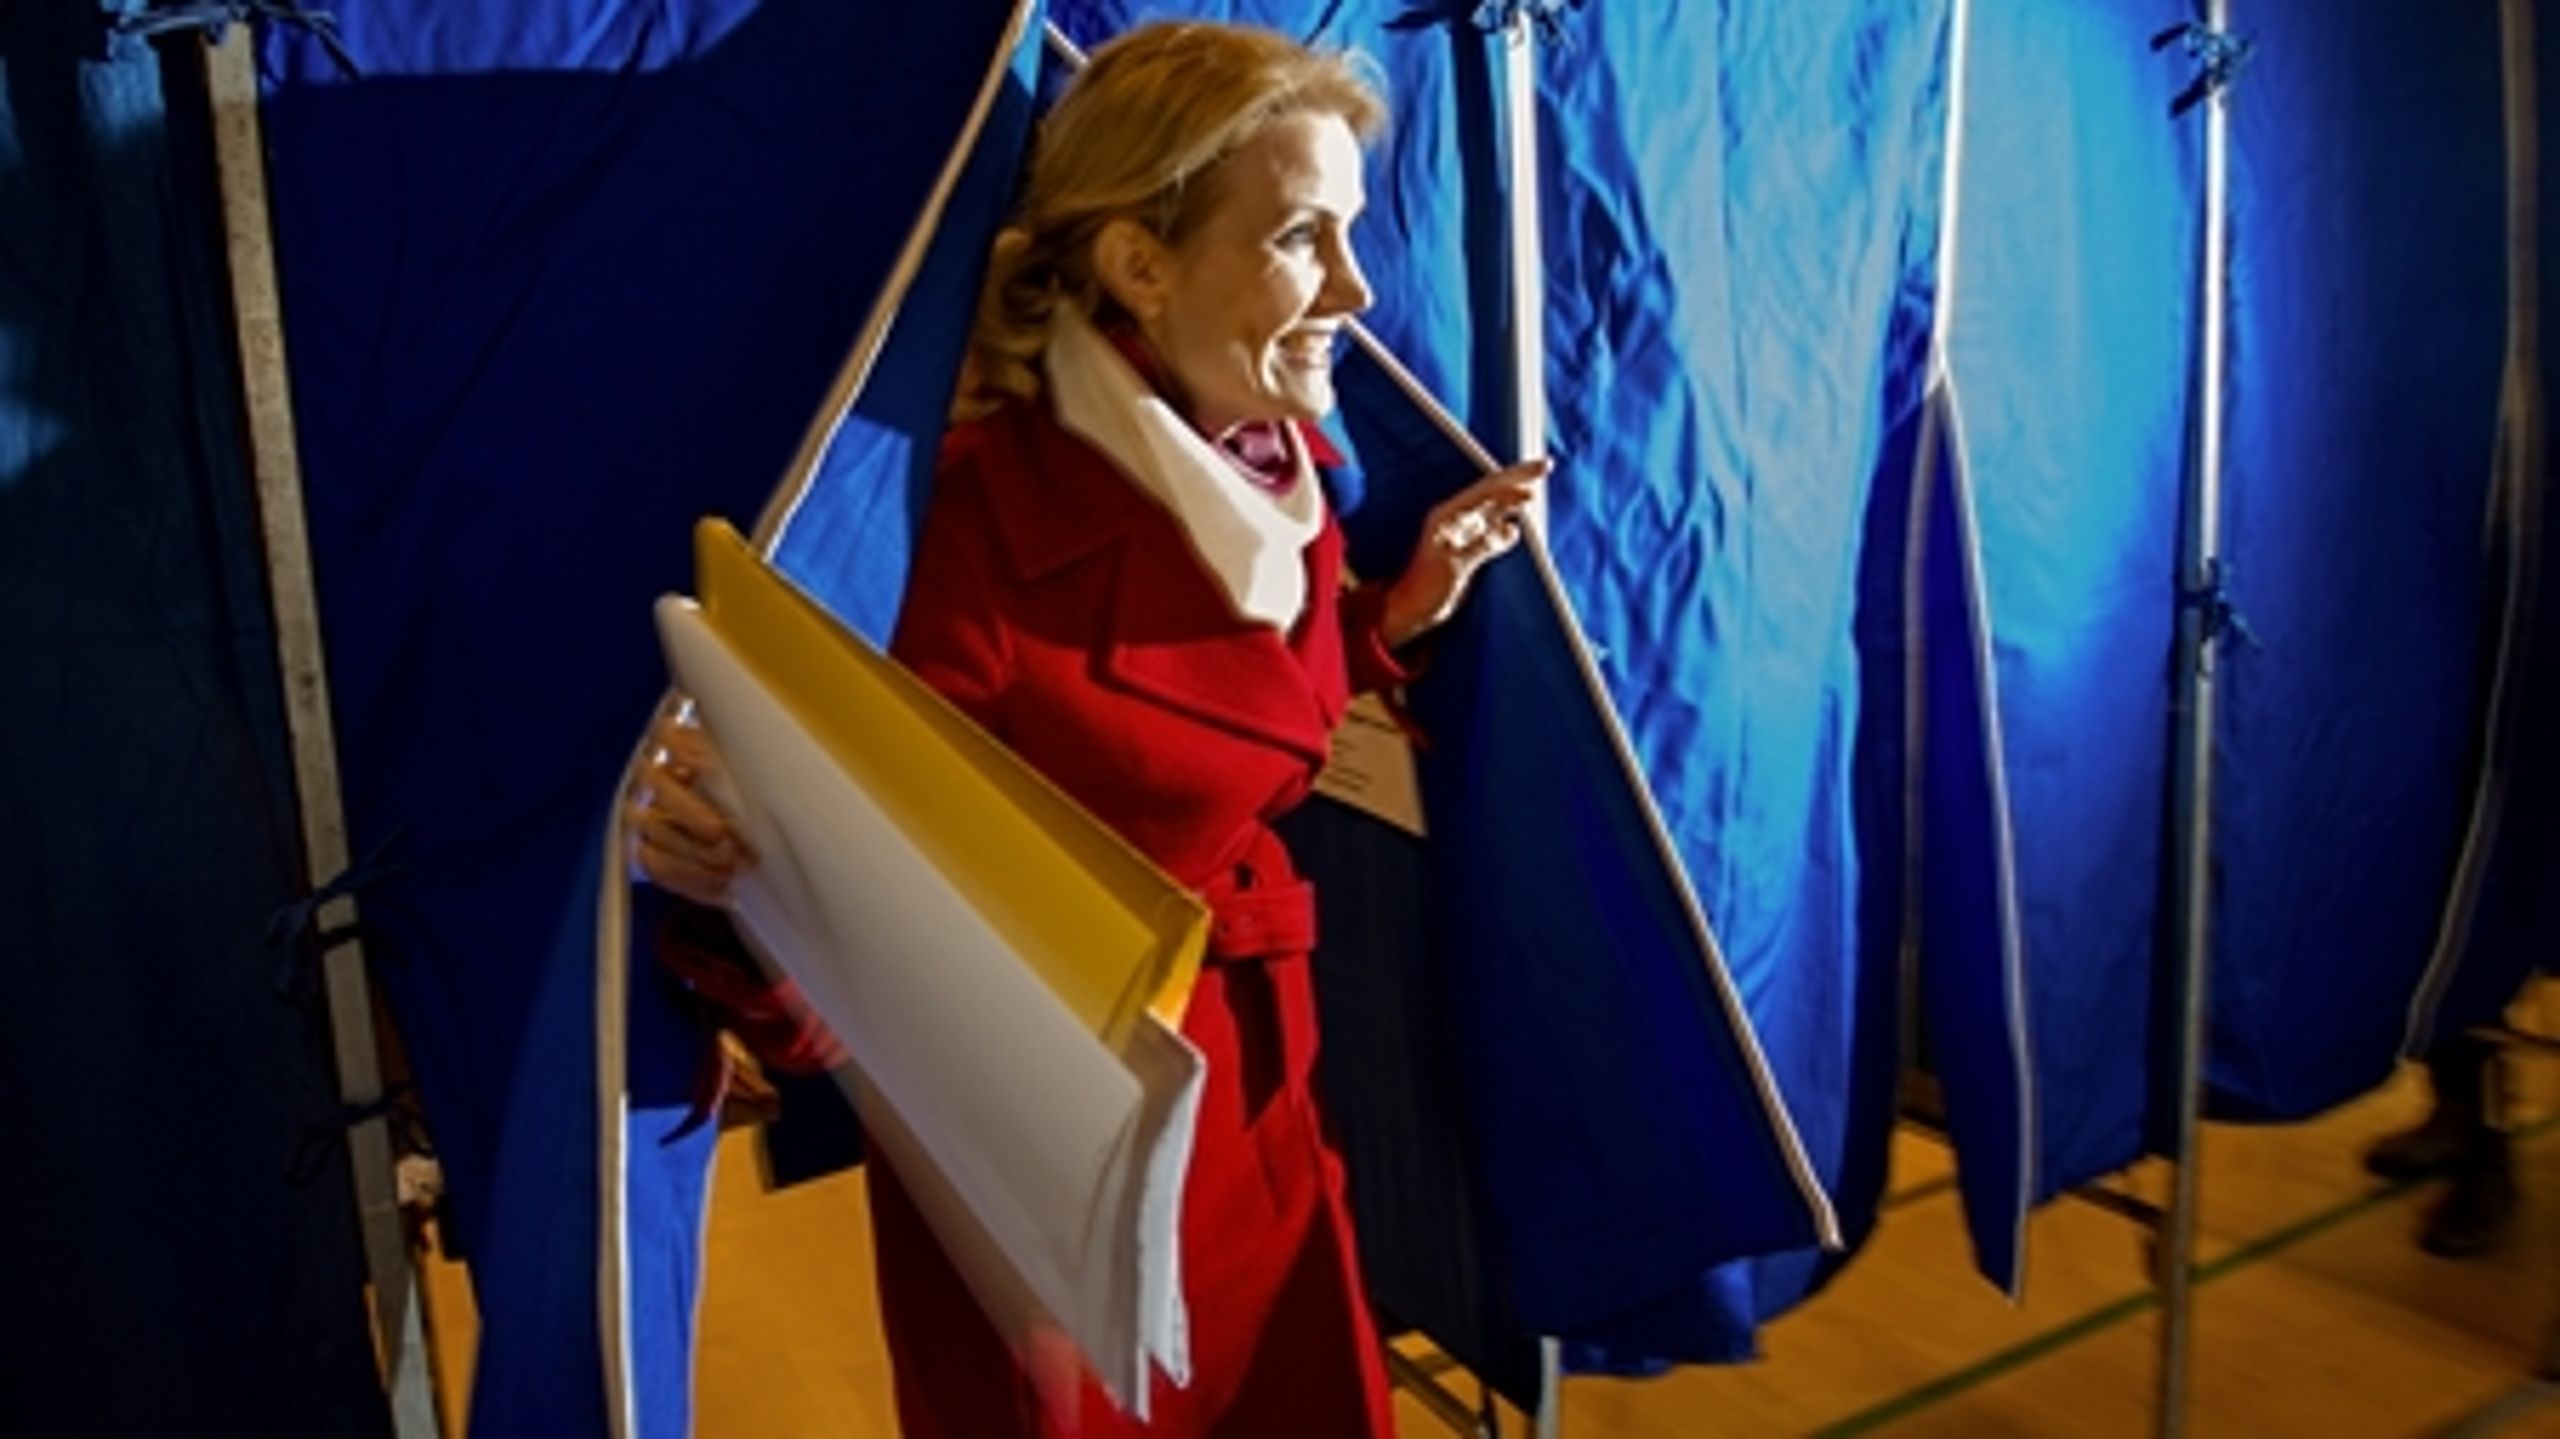 Statsminister Helle Thorning-Schmidt (S)  udtrykte utilfredshed med valgresultatet, men det var på baggrund af forkerte prognoser. I virkeligheden slap Socialdemokraterne med en lille tilbagegang - og blev det største parti på landsplan. 